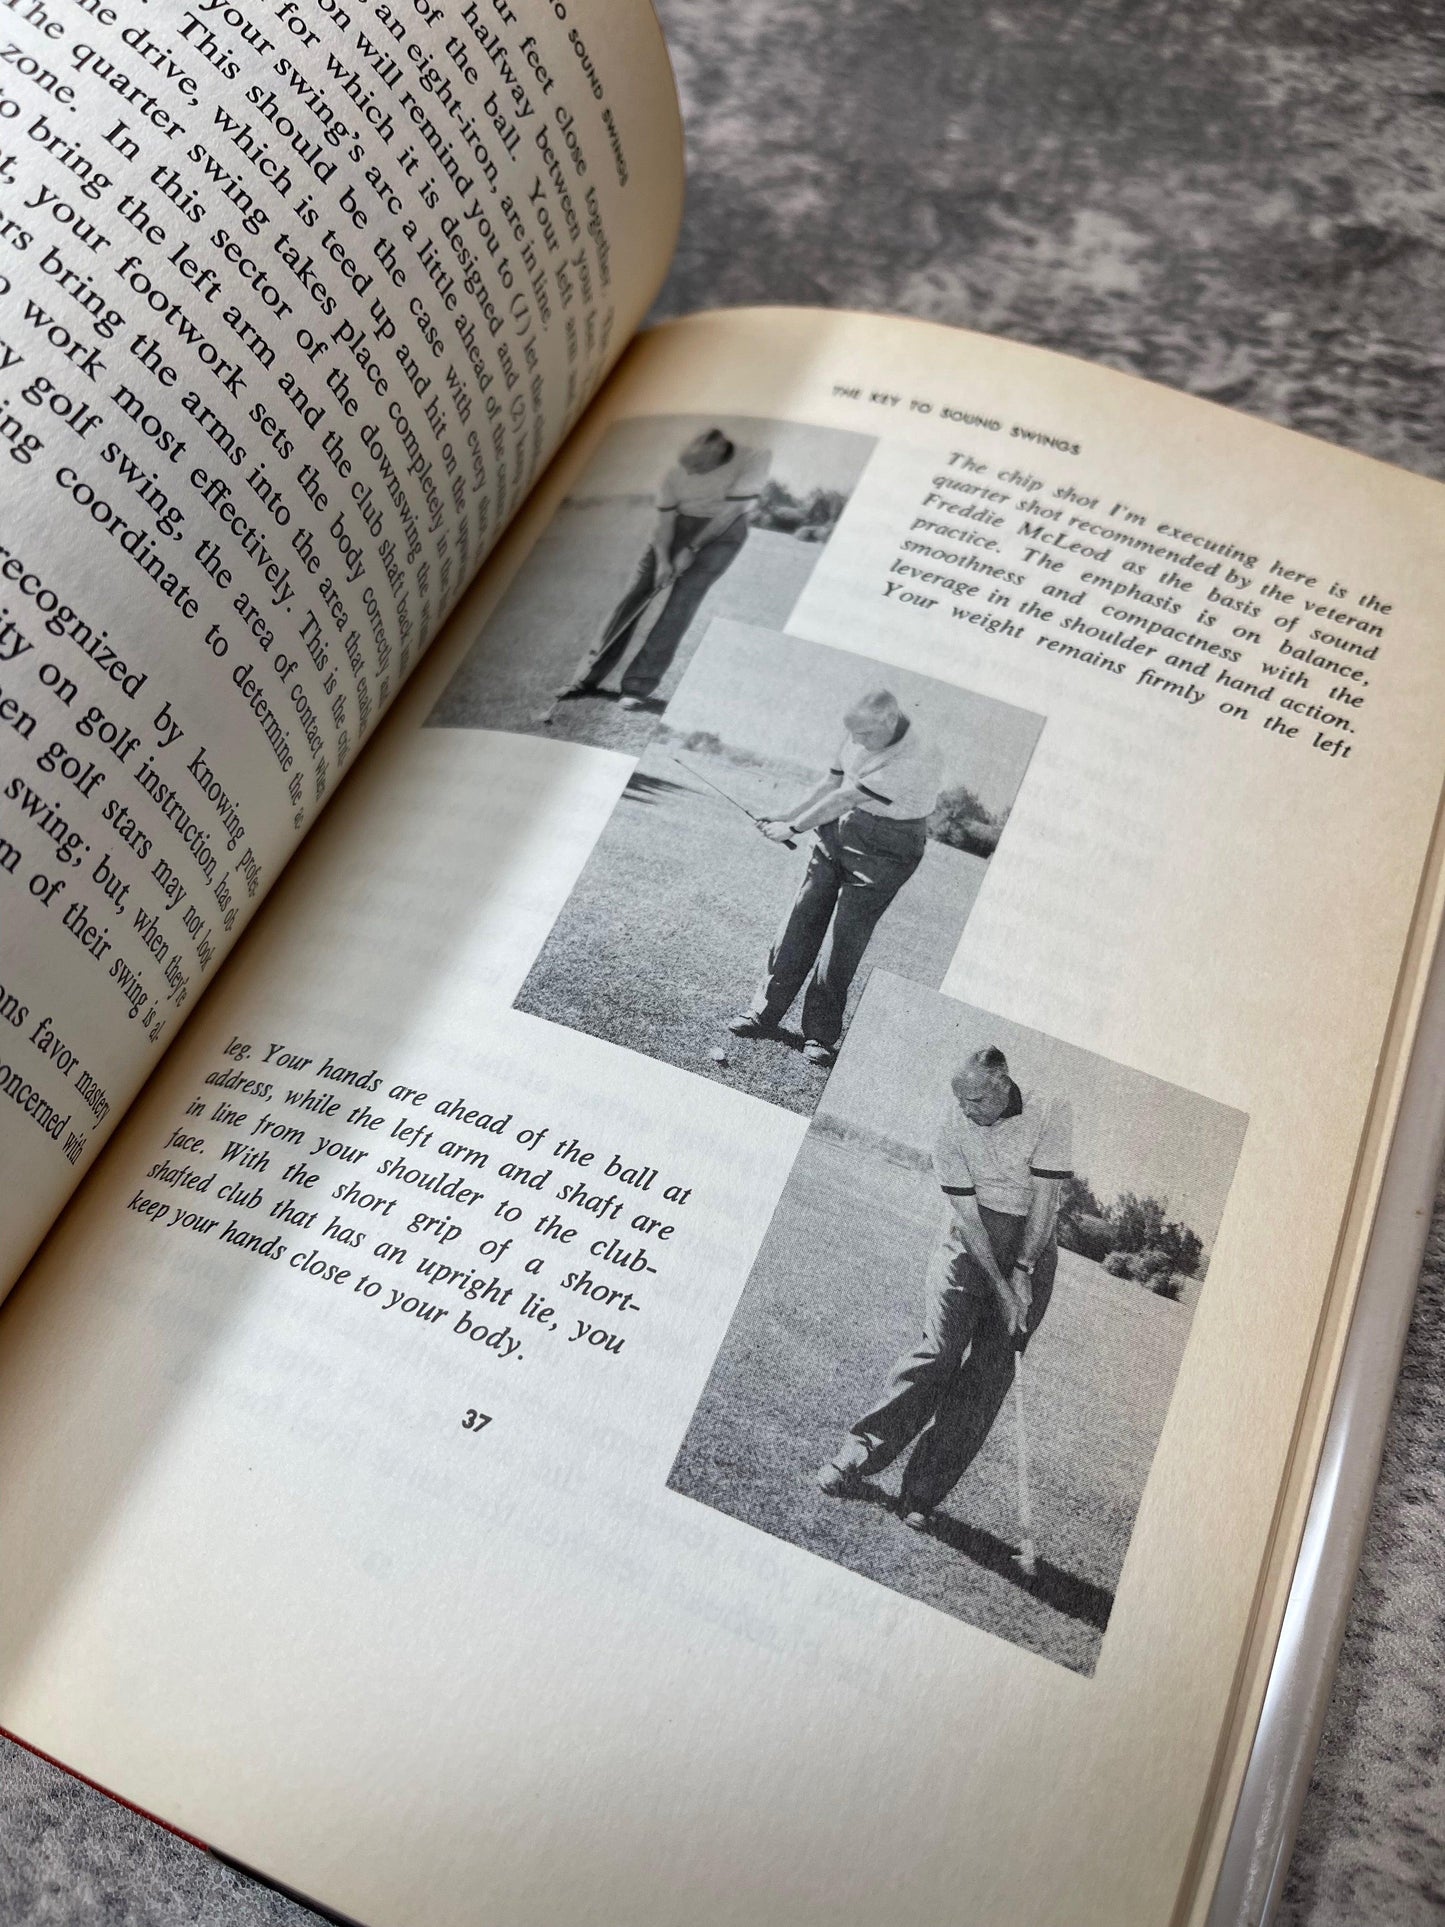 Better Golf Through Better Practice / 1958 - Precious Cache